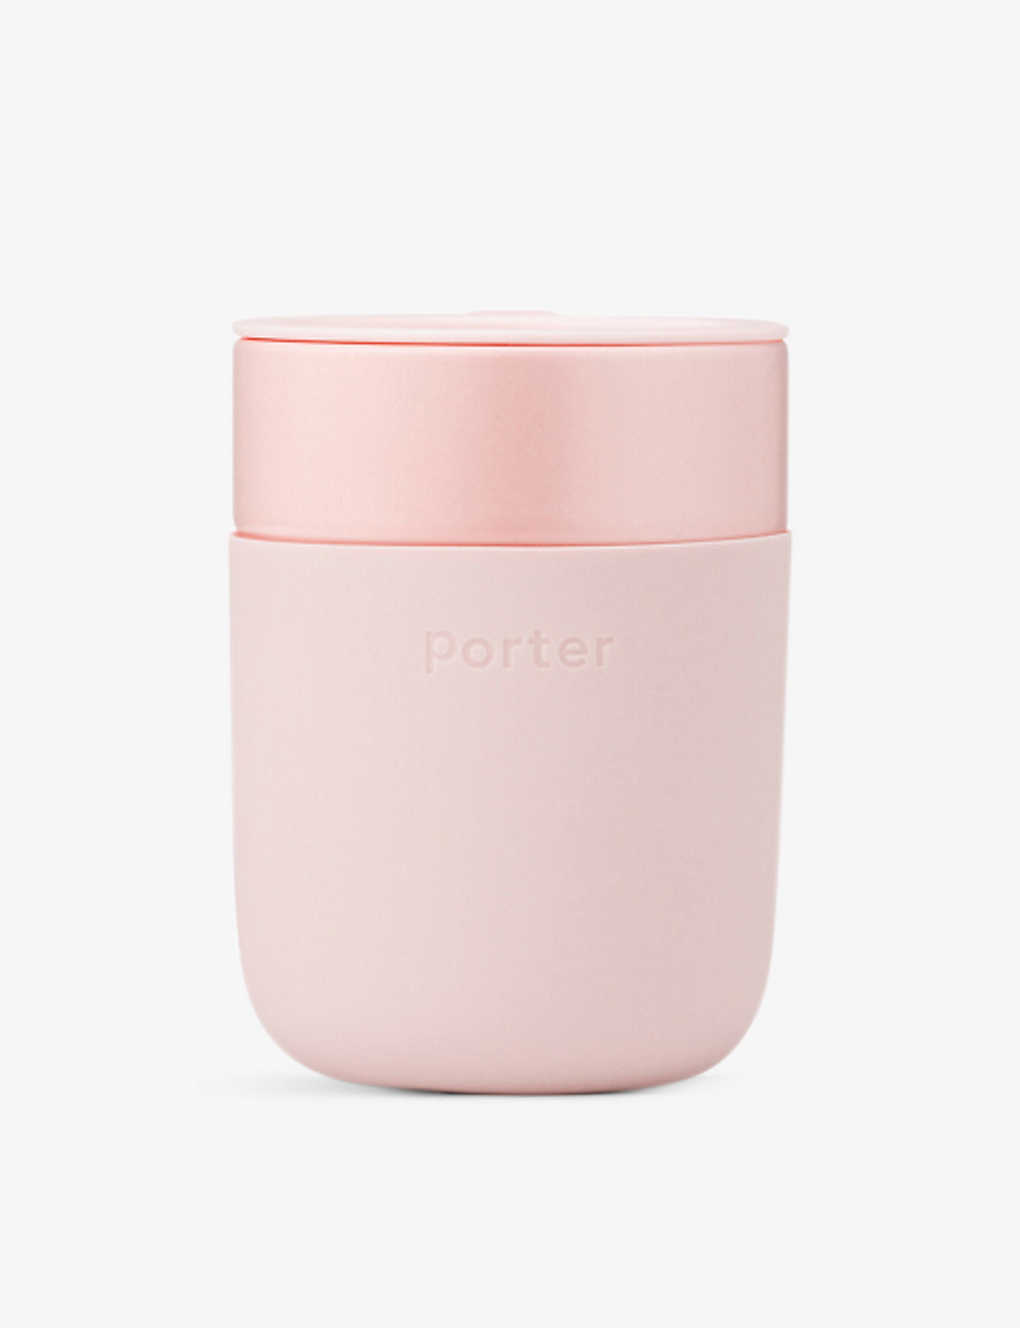 W&p Design Porter Silicone-wrapped Ceramic Mug 354ml